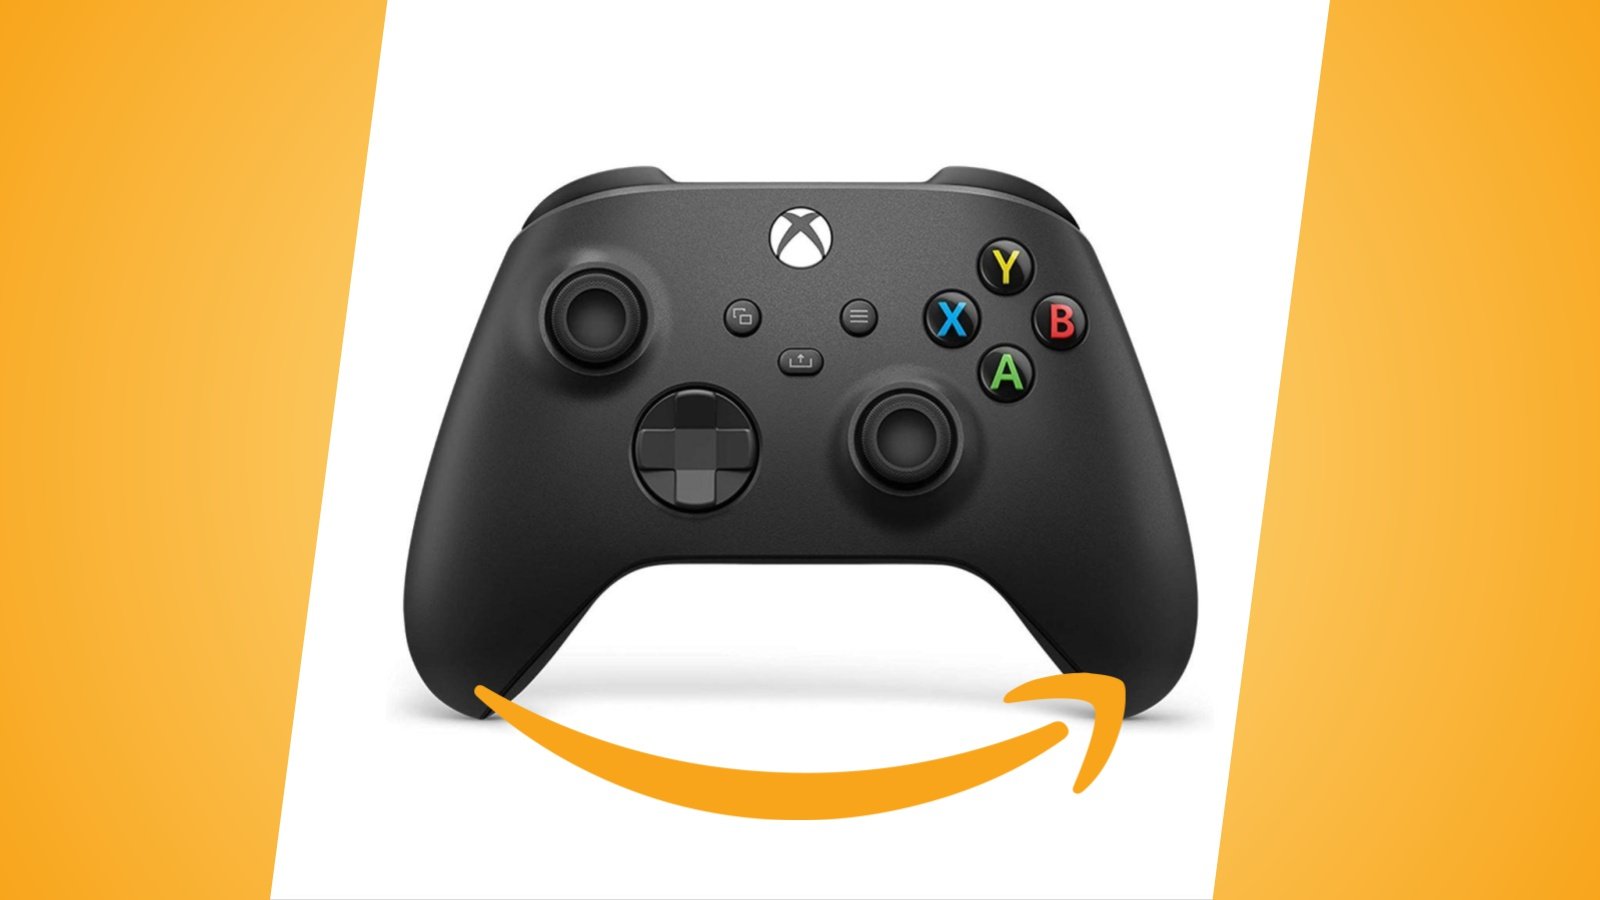 Offerte Amazon: controller Xbox in sei colori diversi ora in sconto